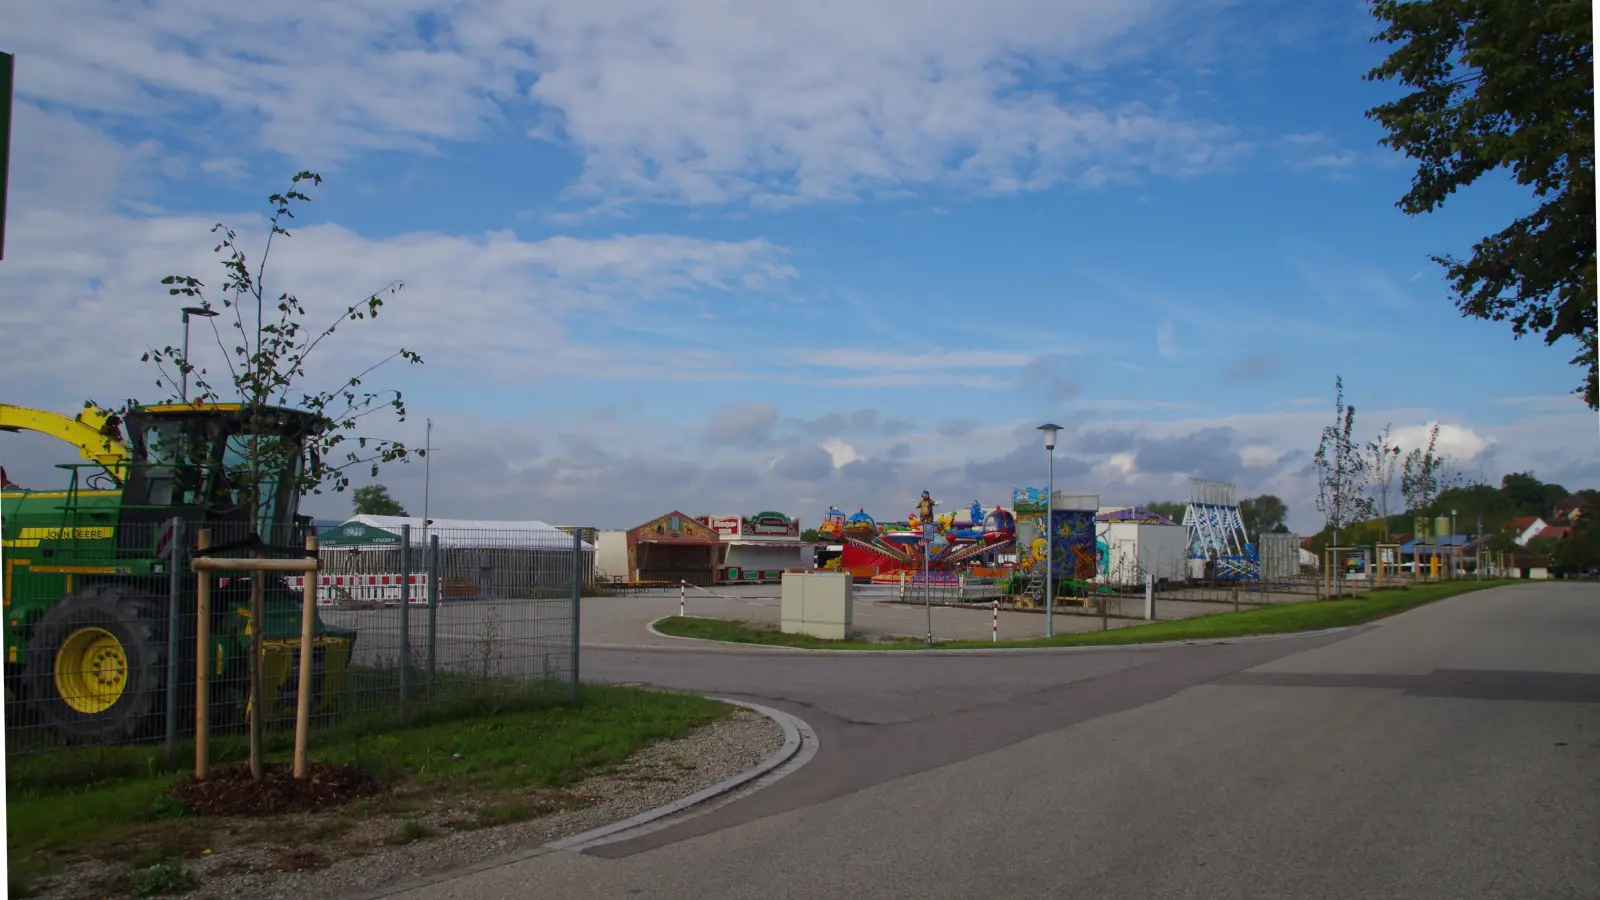 Wird auch als Festplatz genutzt: der Stellplatz für Wohnmobile in Colmberg. Camper zahlen dort künftig einen um 25 Prozent auf neun Euro reduzierten Preis pro Tag. (Foto: Theo Clausen)